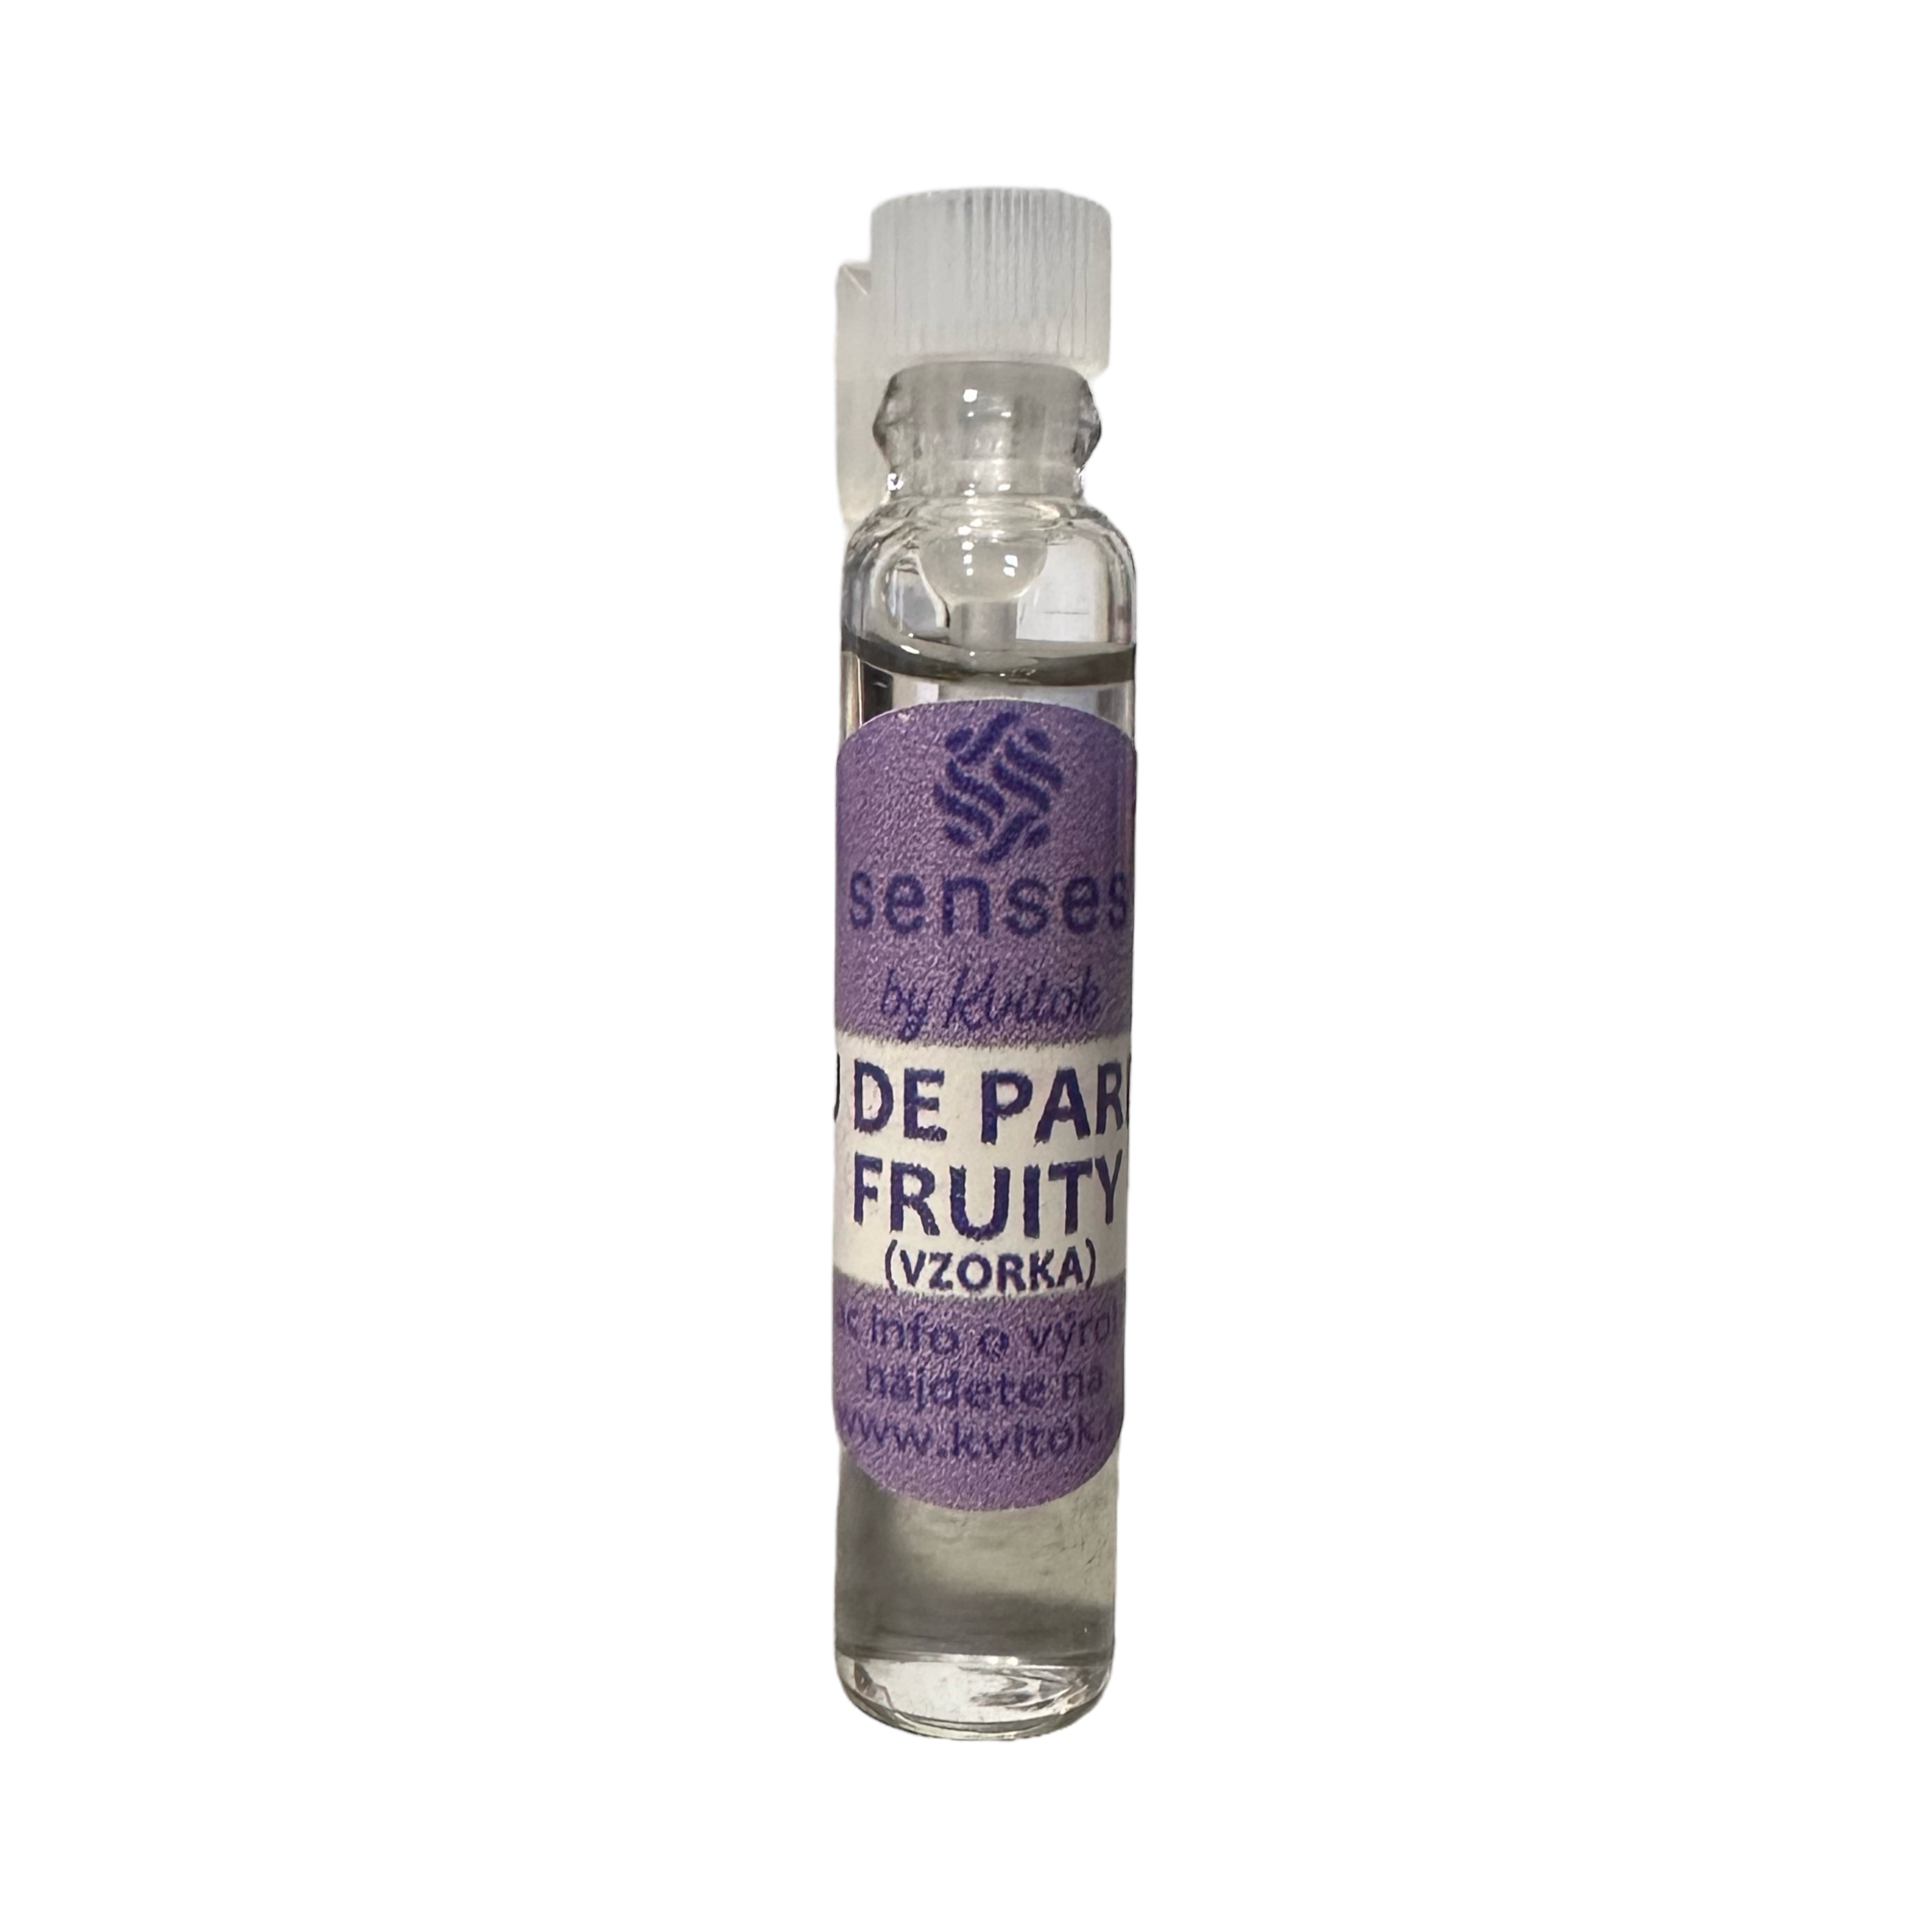 Kvitok Senses Toaletní parfém Fruity - vzorek (2 ml) - s vůní malin